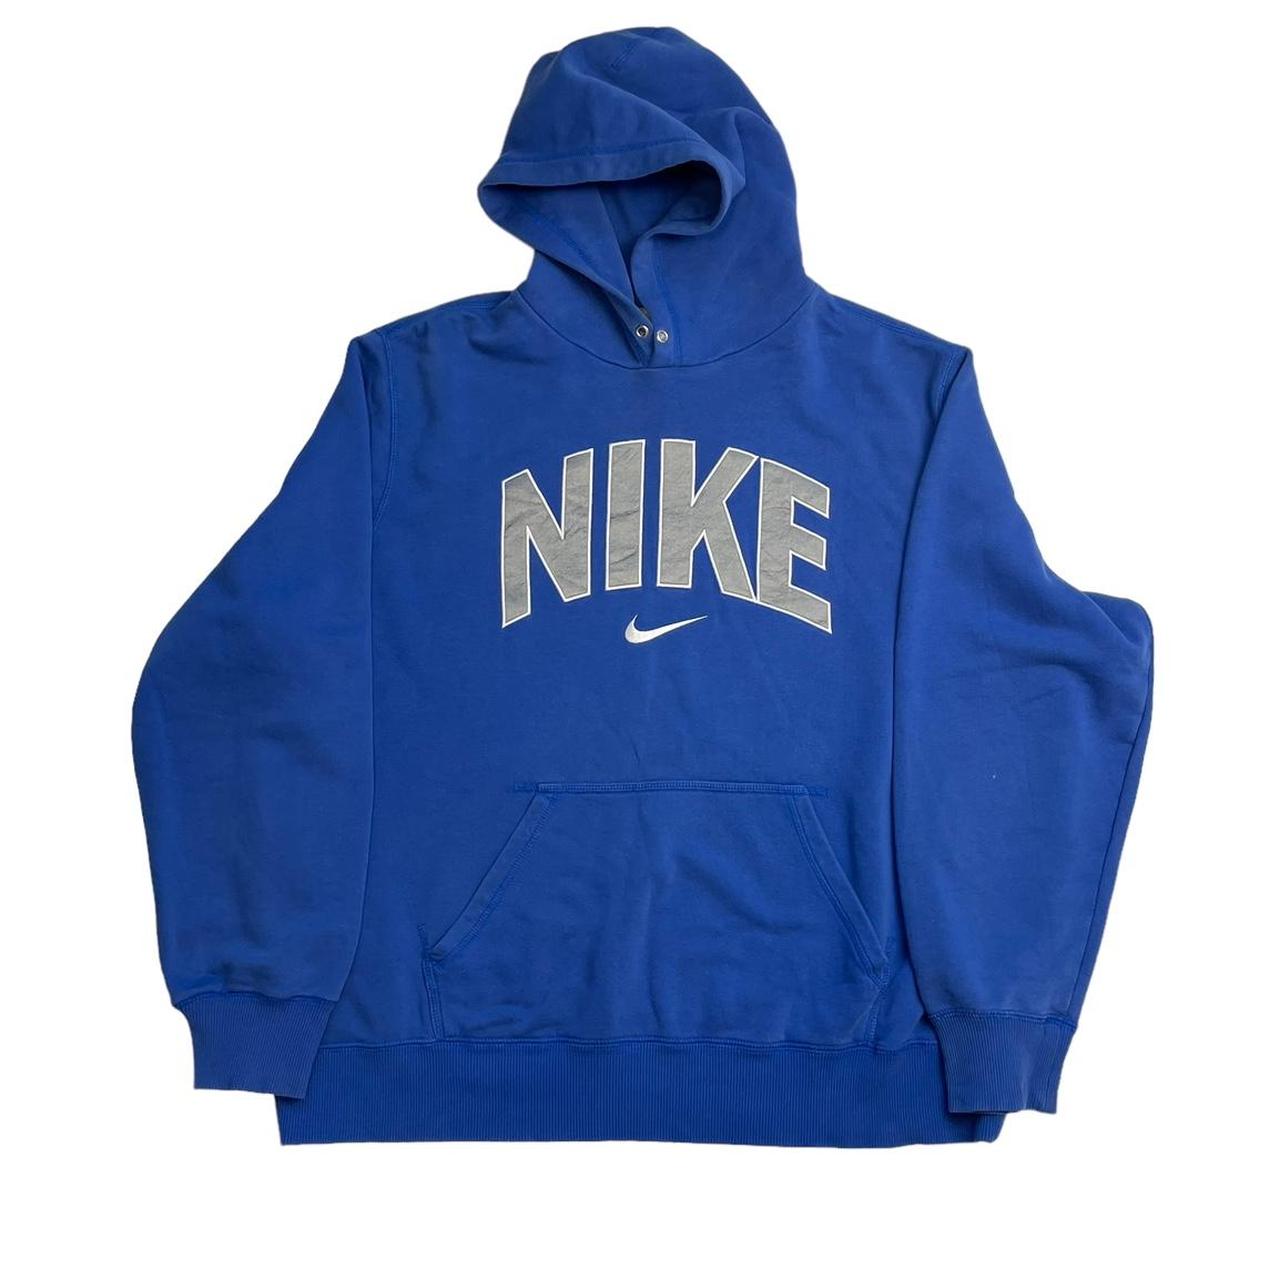 Vintage Nike spellout hoodie blue Mark on sleeve... - Depop